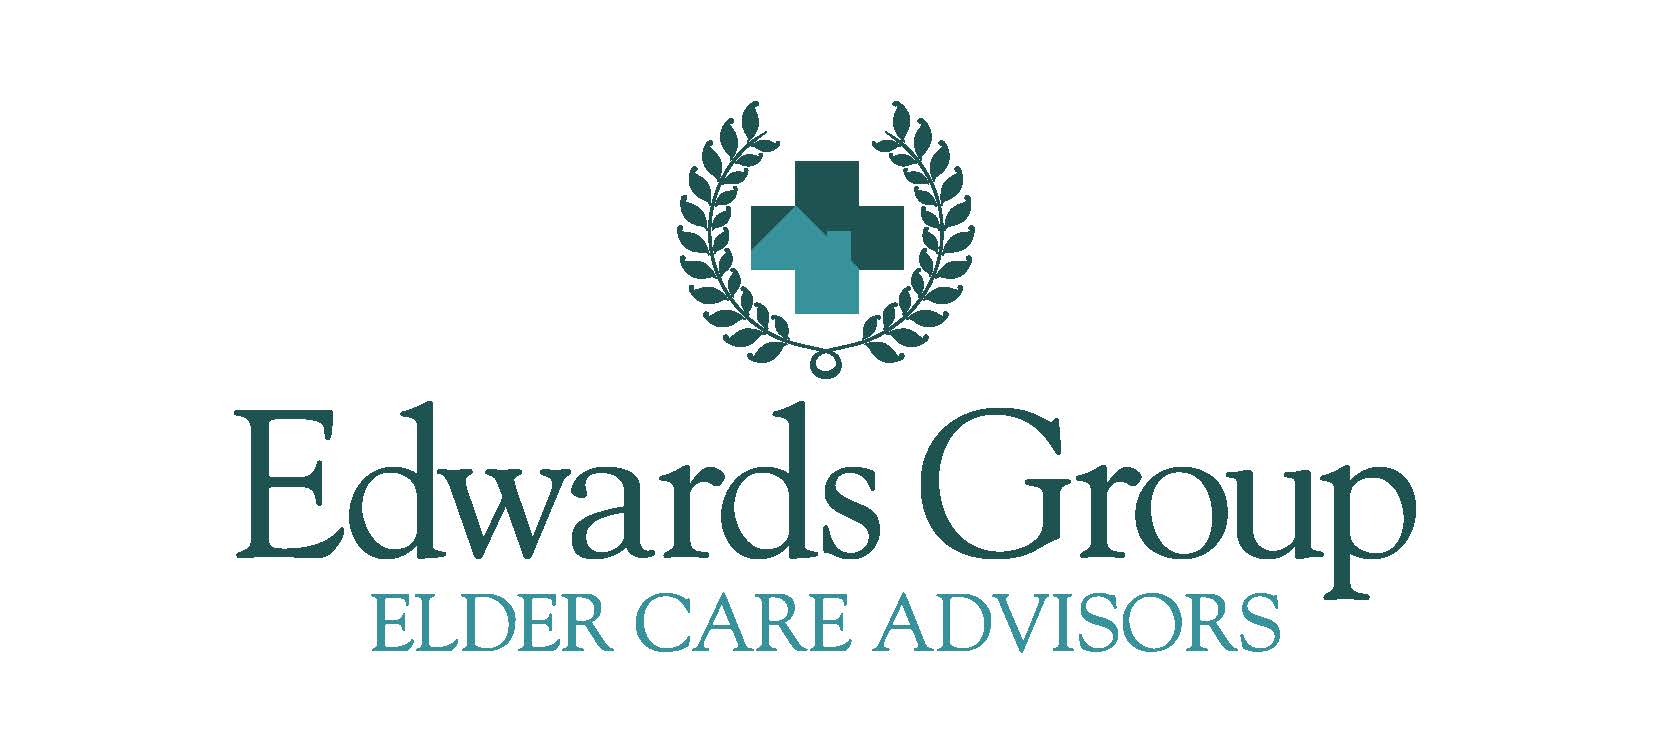 Edwards Group Elder Care Advisors Logo